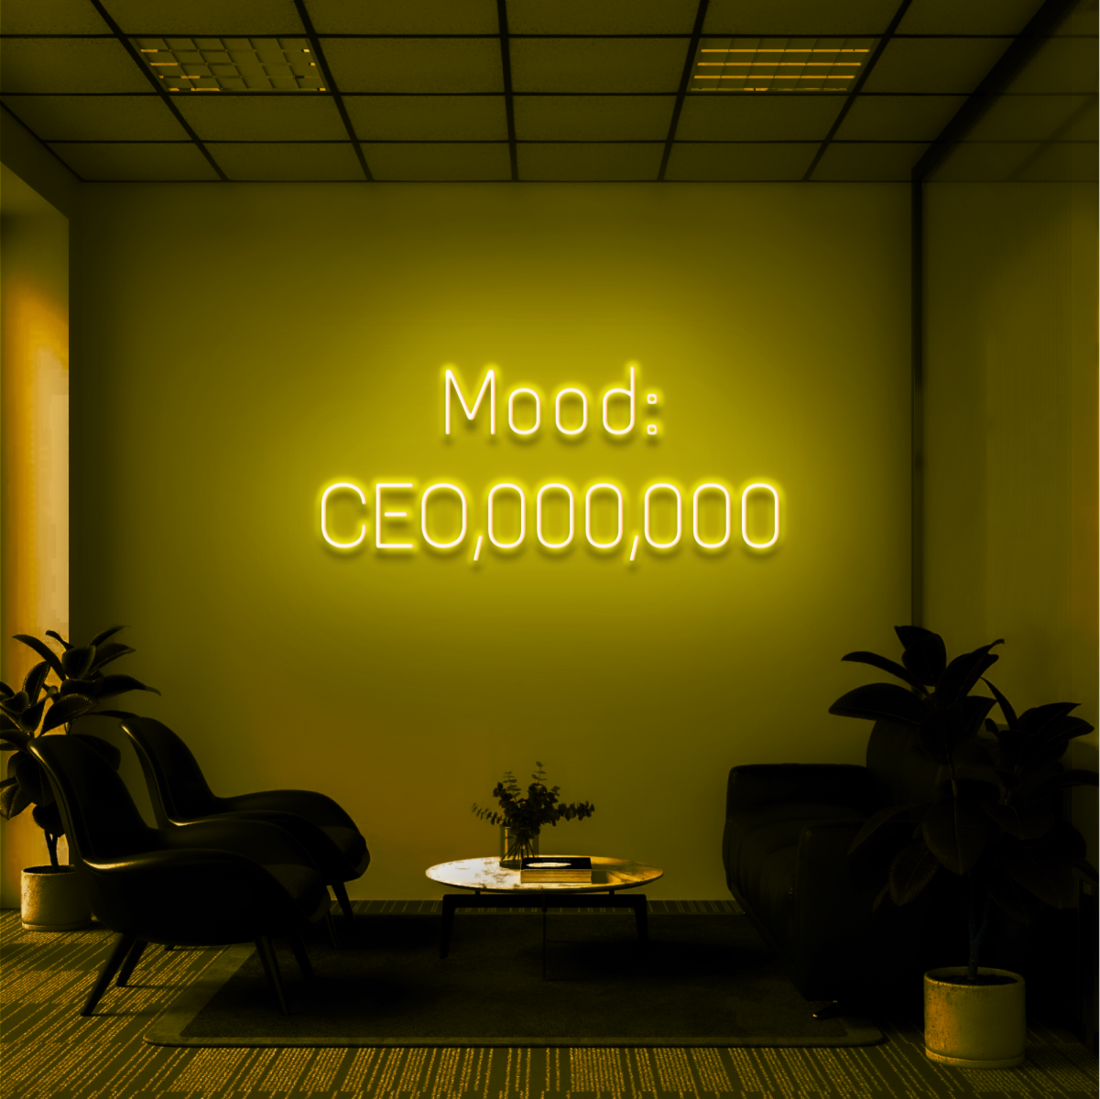 "CEO MOOD" - NEONIDAS NEONSCHILD LED-SCHILD